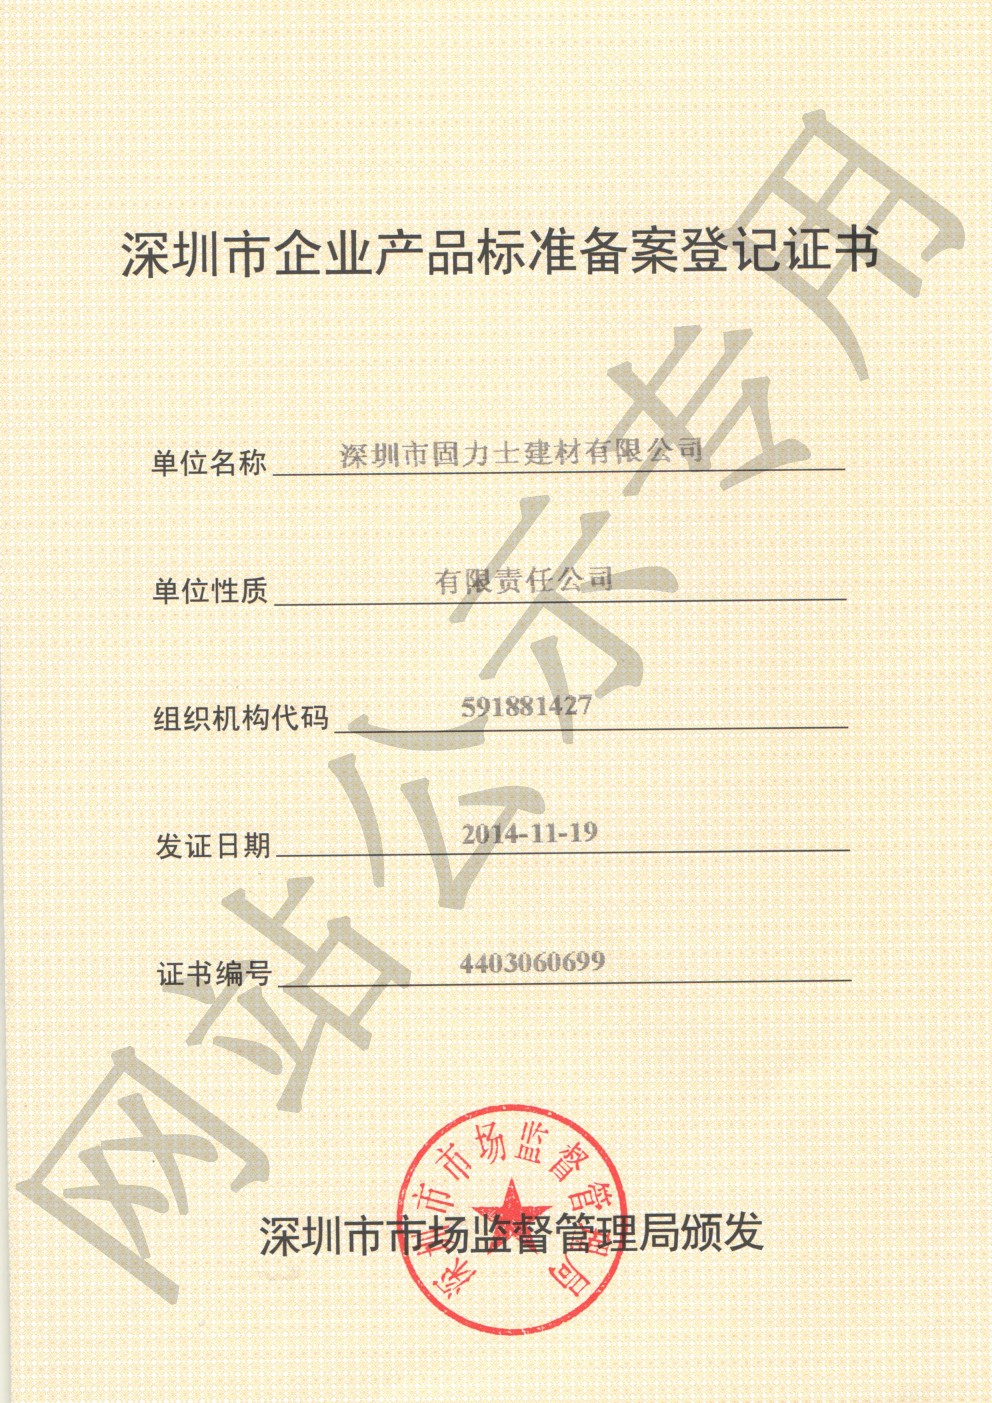 双柏企业产品标准登记证书